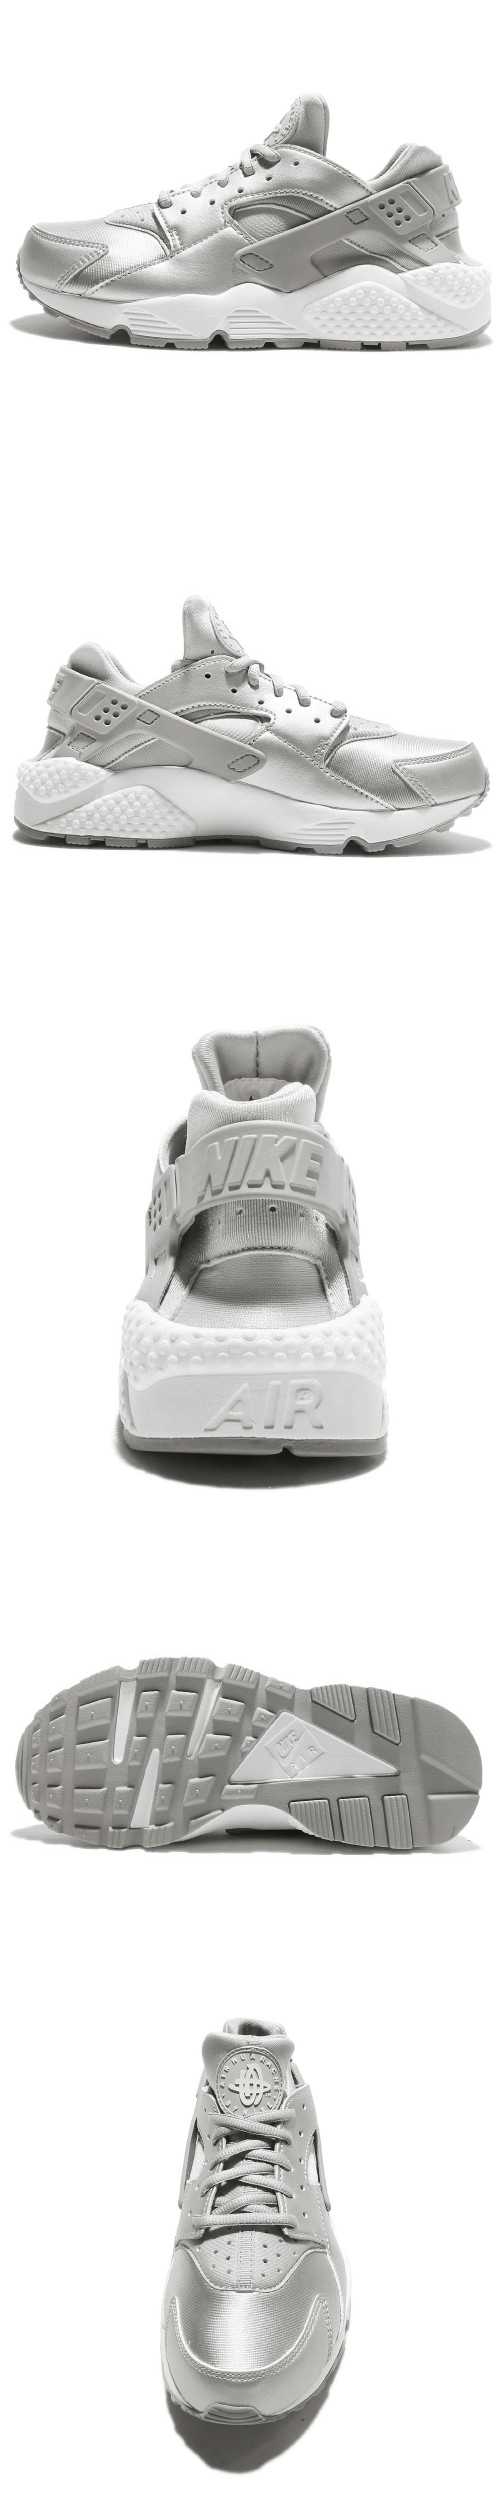 Nike Wmns Air Huarache Run 女鞋